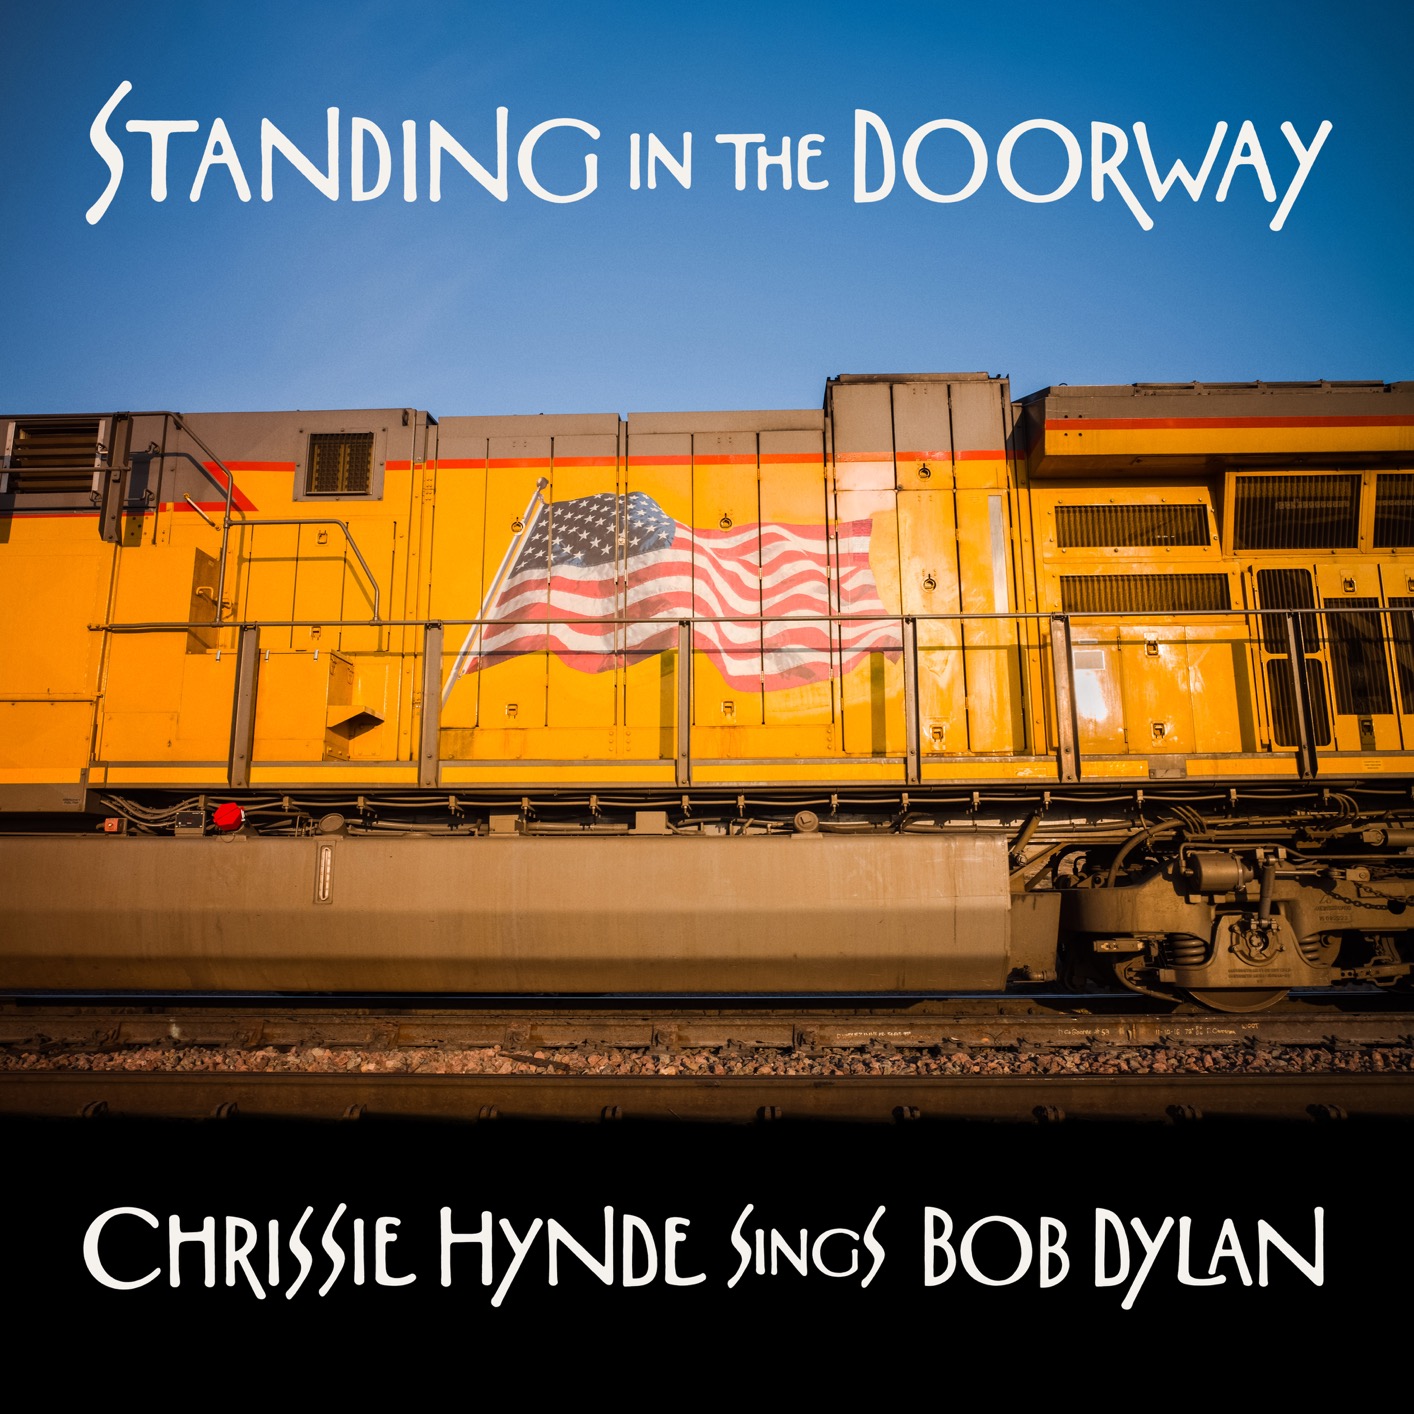 Chrissie Hynde - Standing in the Doorway: Chrissie Hynde Sings Bob Dylan (2021) [FLAC 24bit/48kHz]